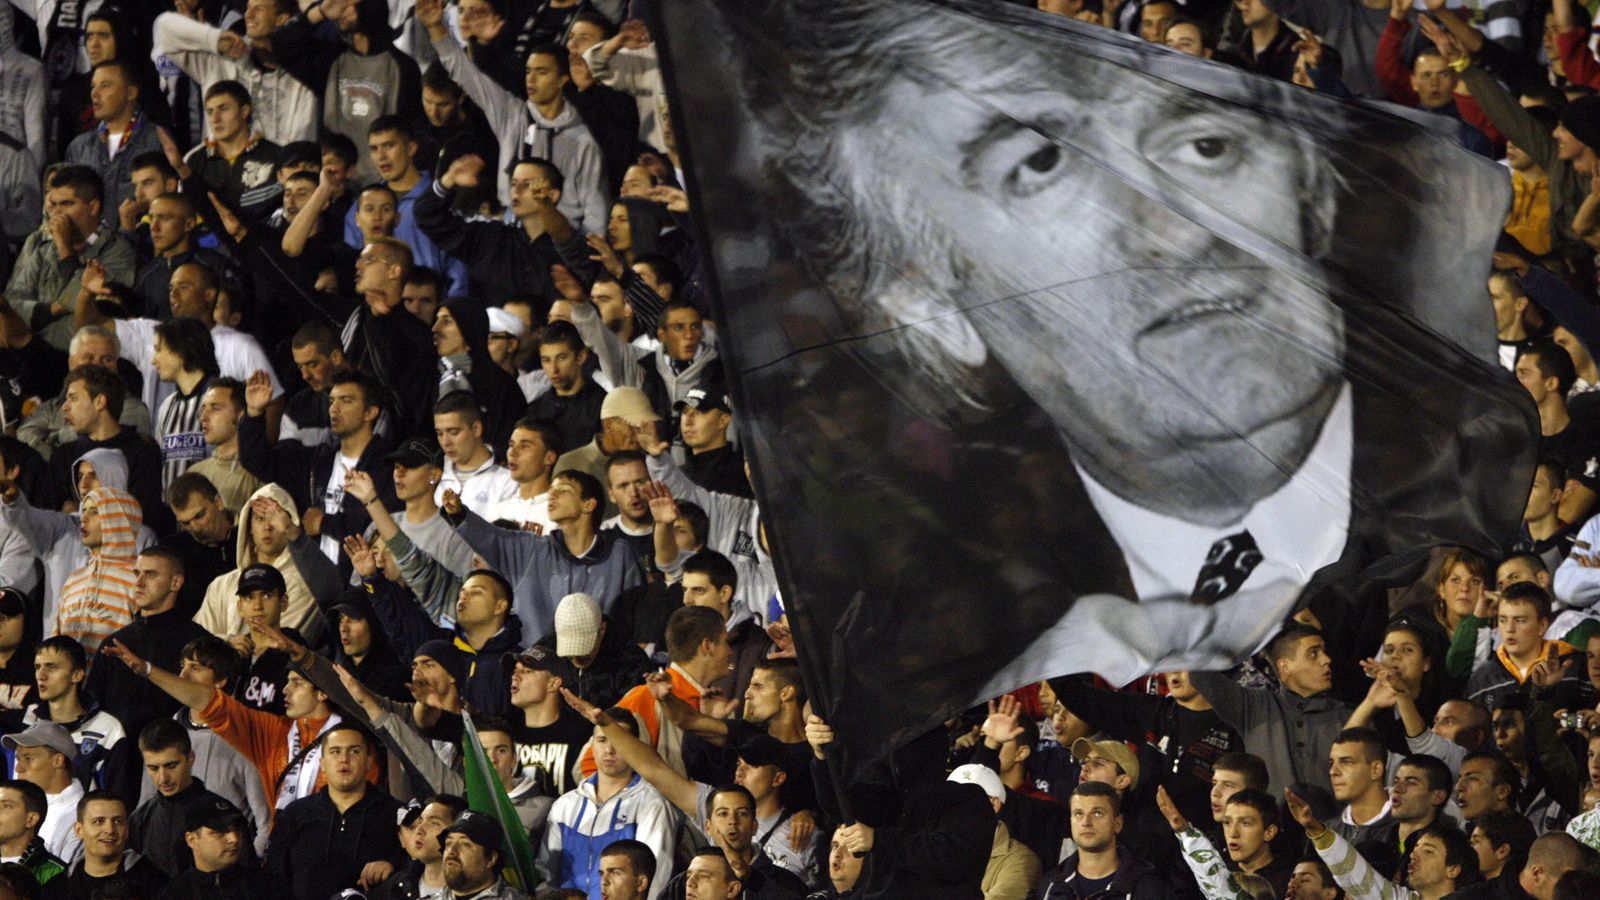 Foto: Hinchas del Partizan de Belgrado agitan una foto gigante de Karadzic durante un partido, en julio de 2008 (Reuters)